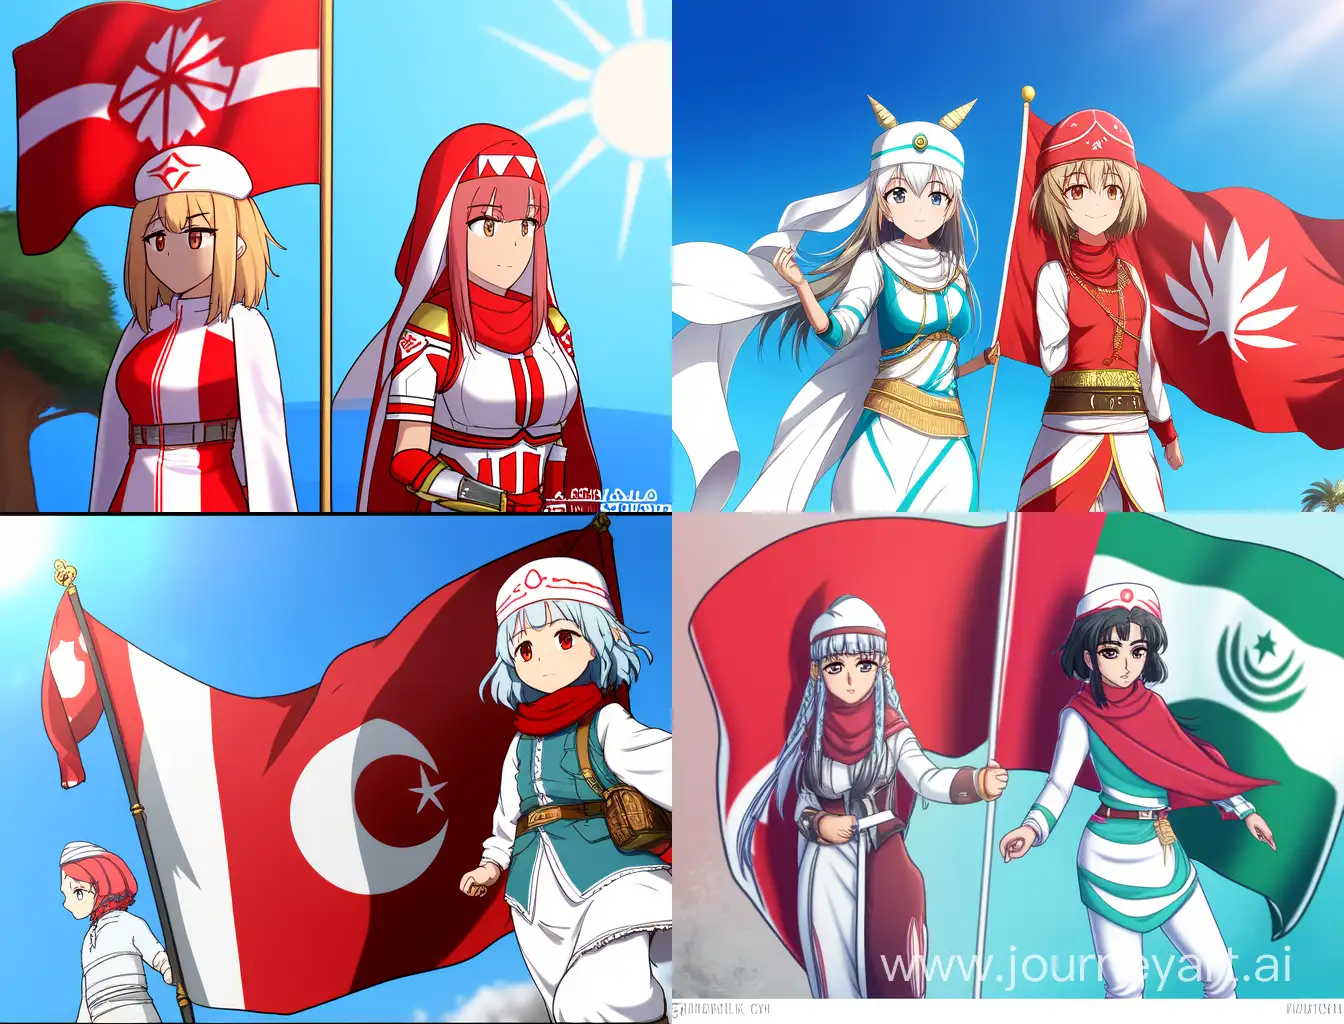 بنت ترتدي علم المغرب تقف بجانبها بنت ترتدي علم تونس